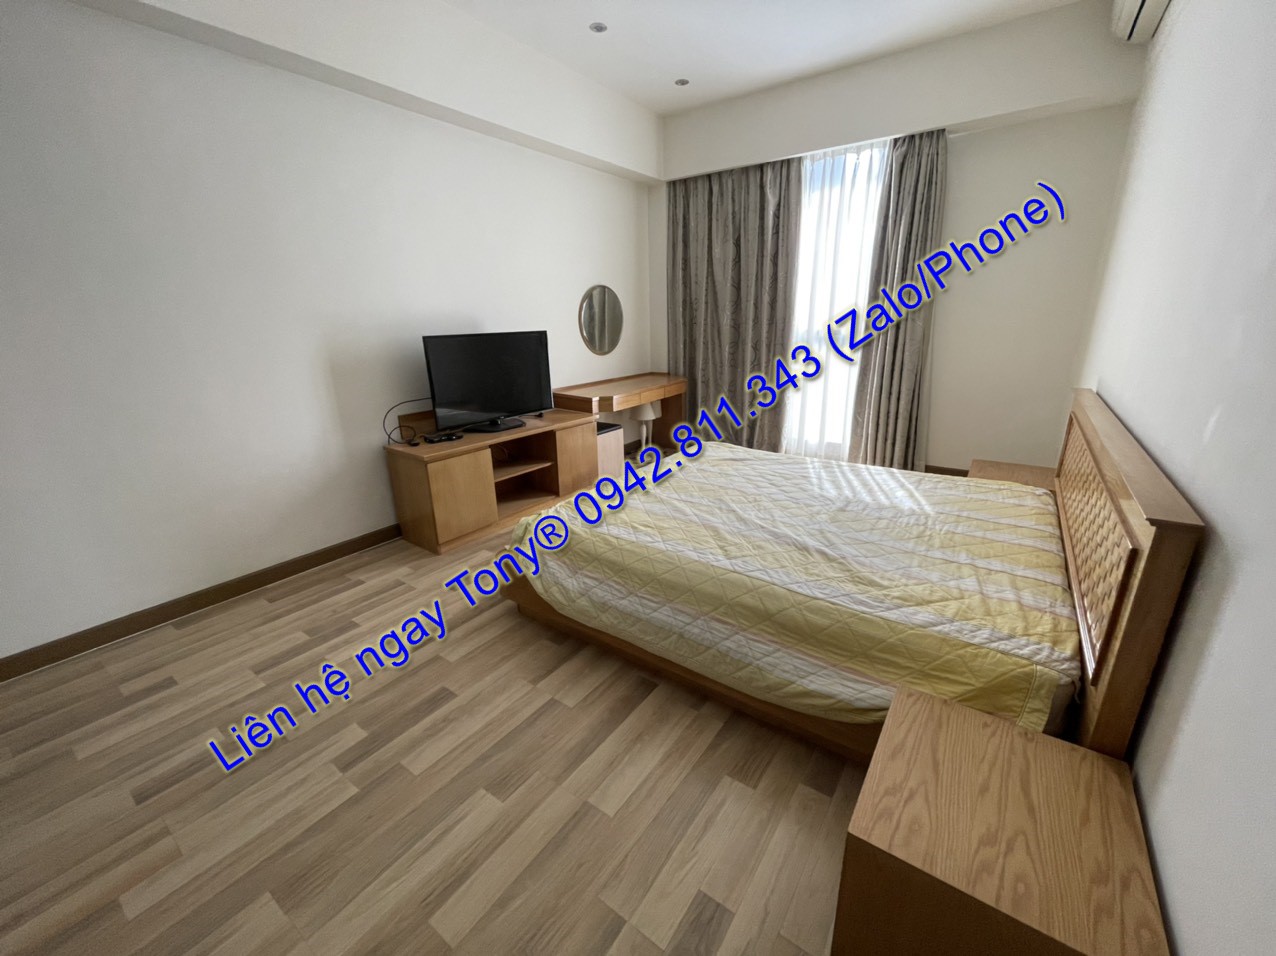 Thuê căn hộ 2 phòng ngủ tầng cao full tiện nghi Sài Gòn Aiprort PLaza chỉ 15 Triệu Tel 0942.811.343 Tony (Zalo/Phone) đi xem